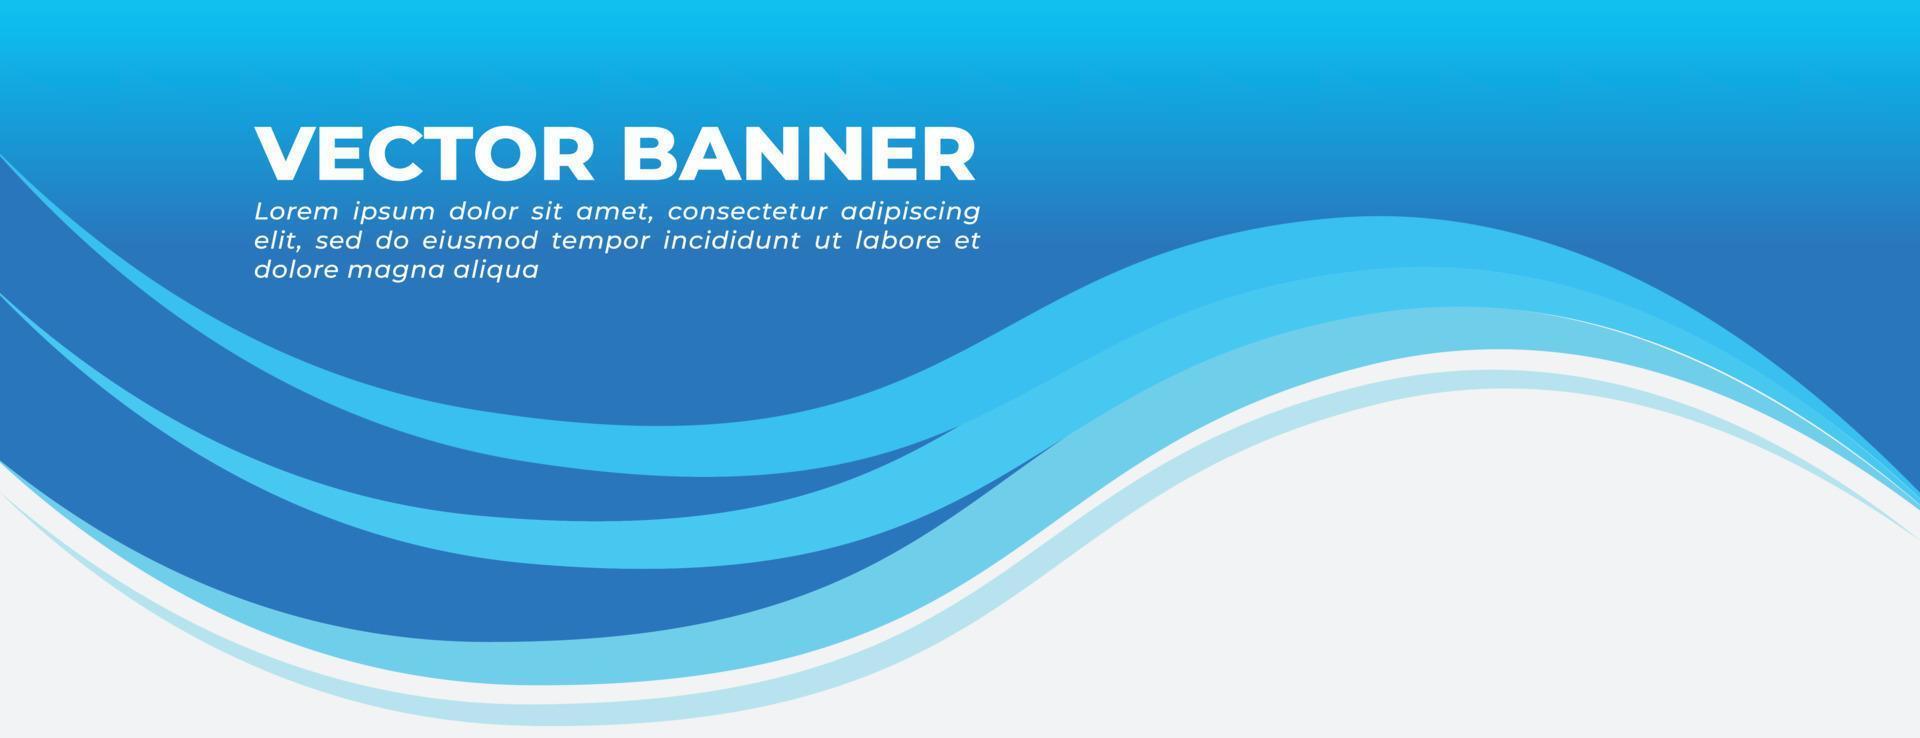 banner vetorial azul com design de modelo de ondas vetor